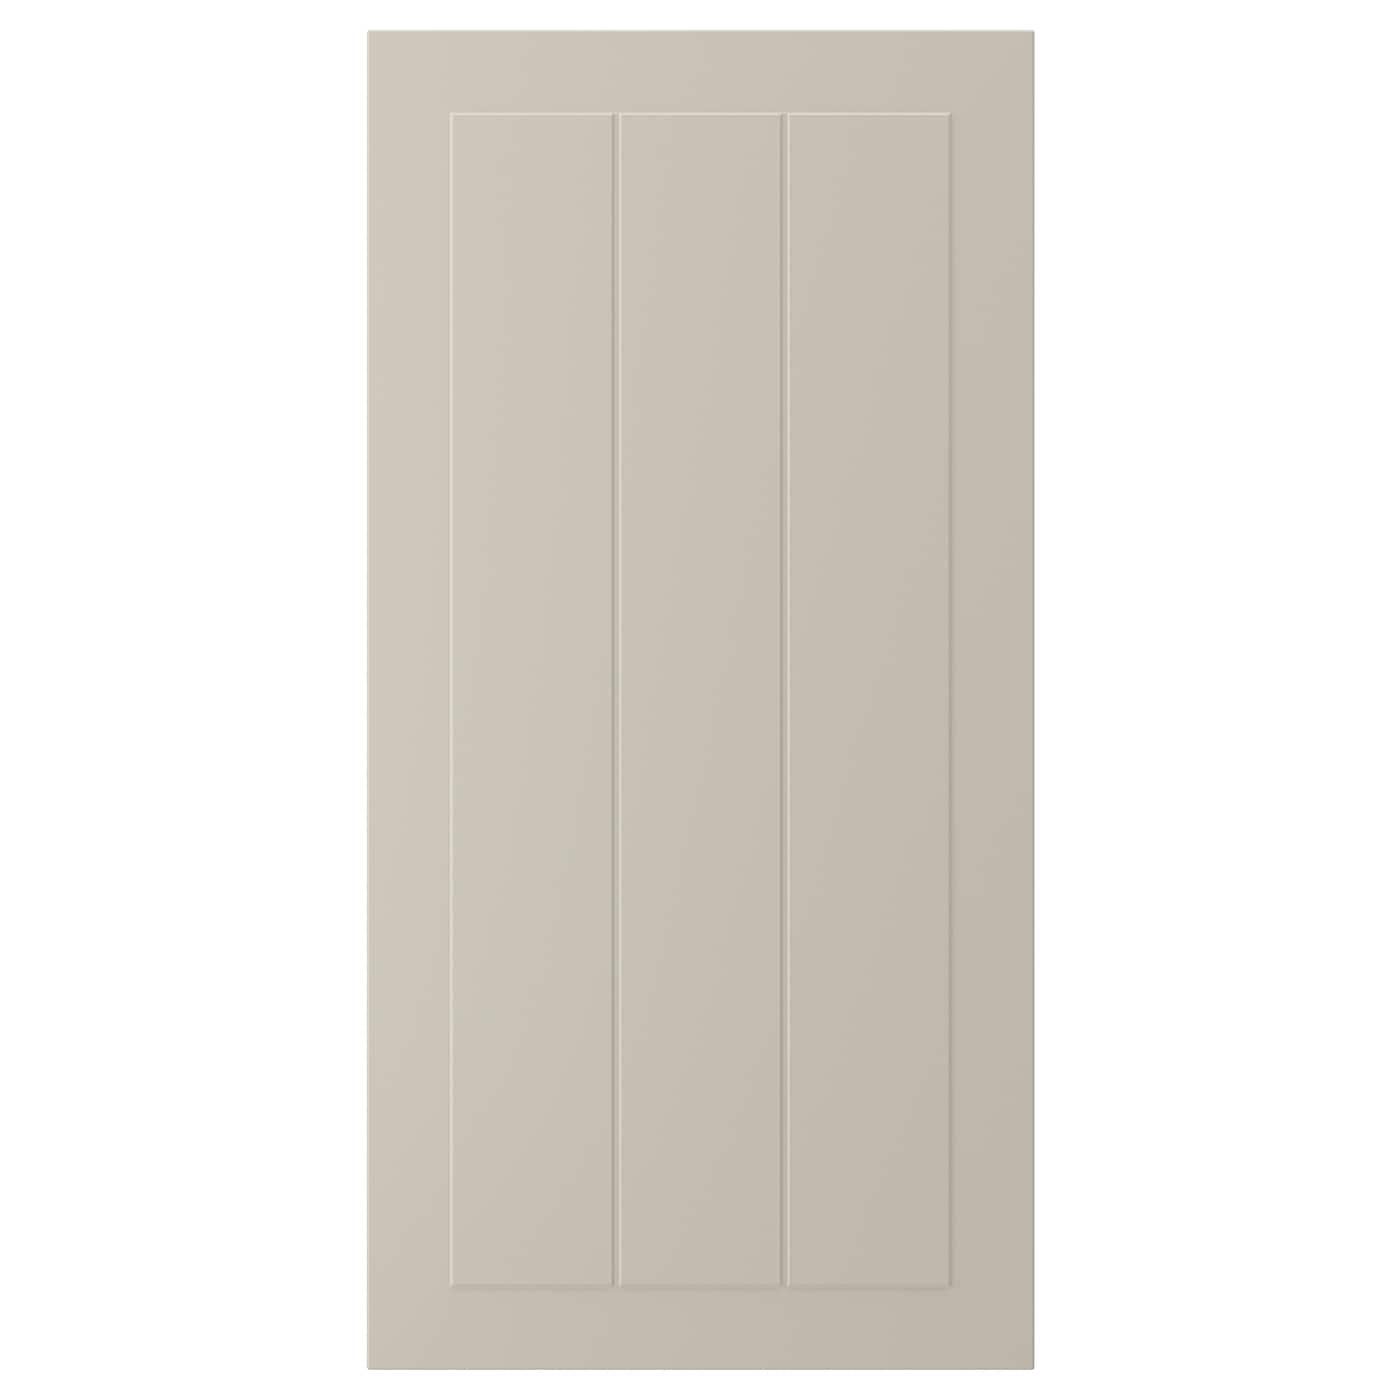 Дверца - IKEA STENSUND, 80х40 см, бежевый, СТЕНСУНД ИКЕА